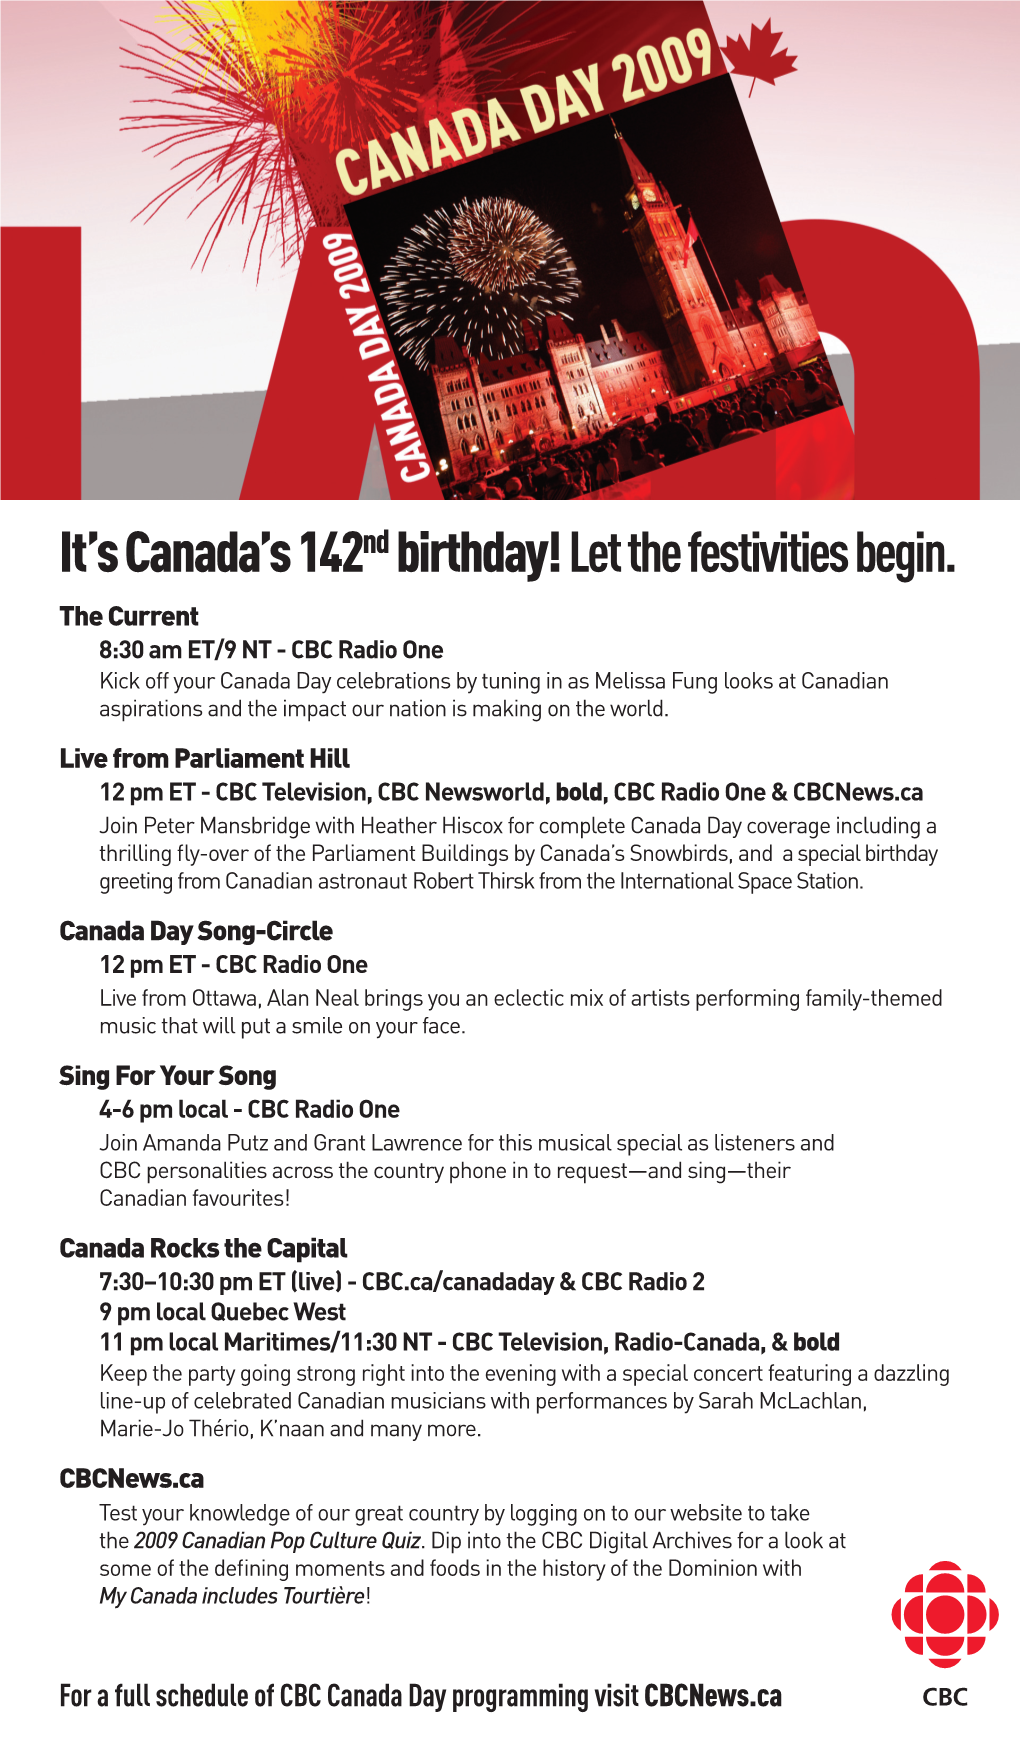 Download CBC News Canada Day 2009 Program Guide (PDF)